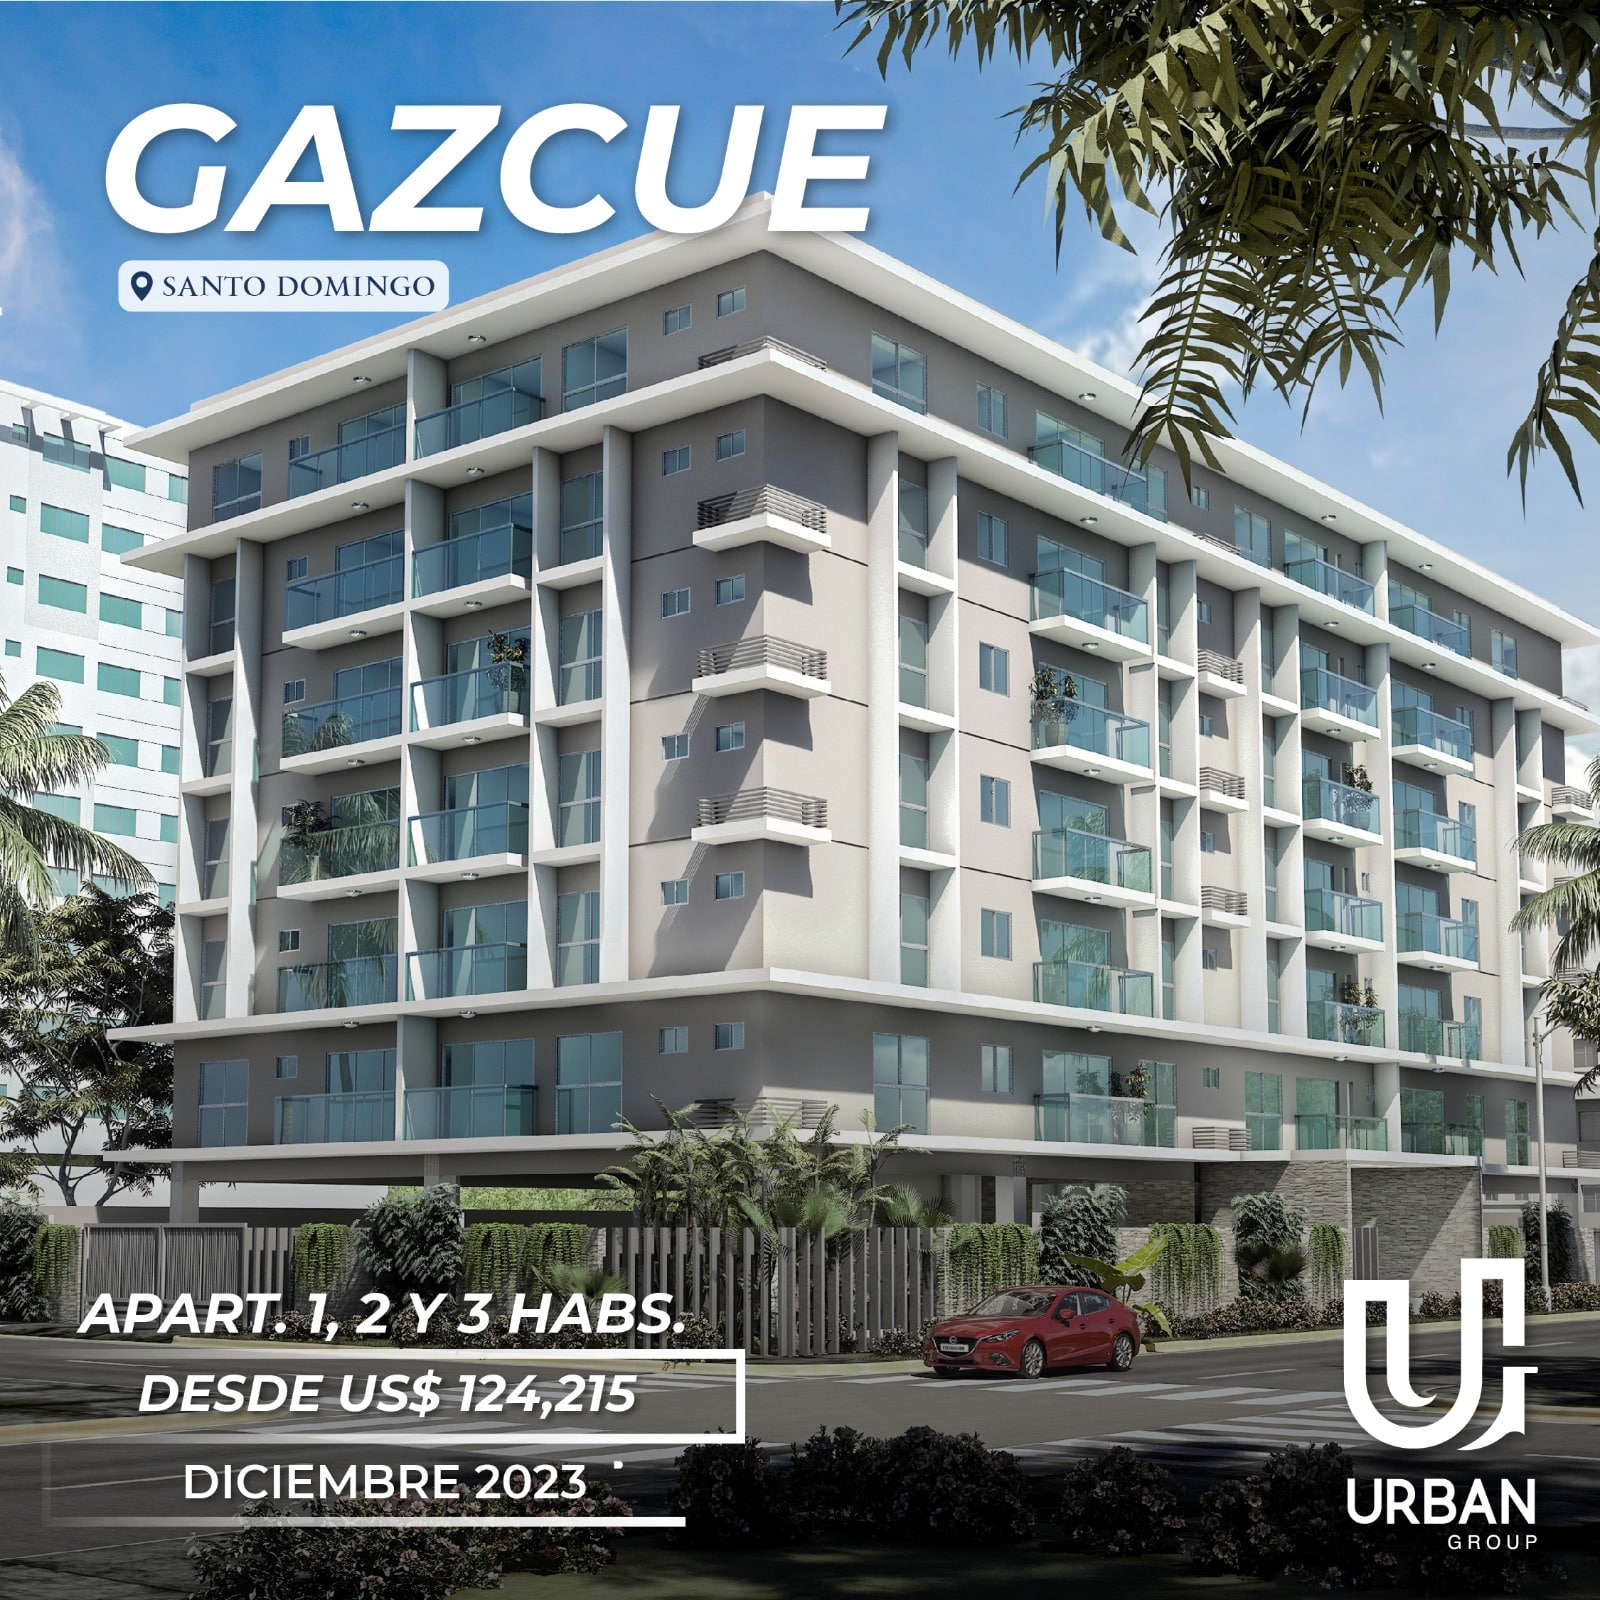 Apartamentos de 1, 2 & 3 Habitaciones Desde US$124,215 Gazcue